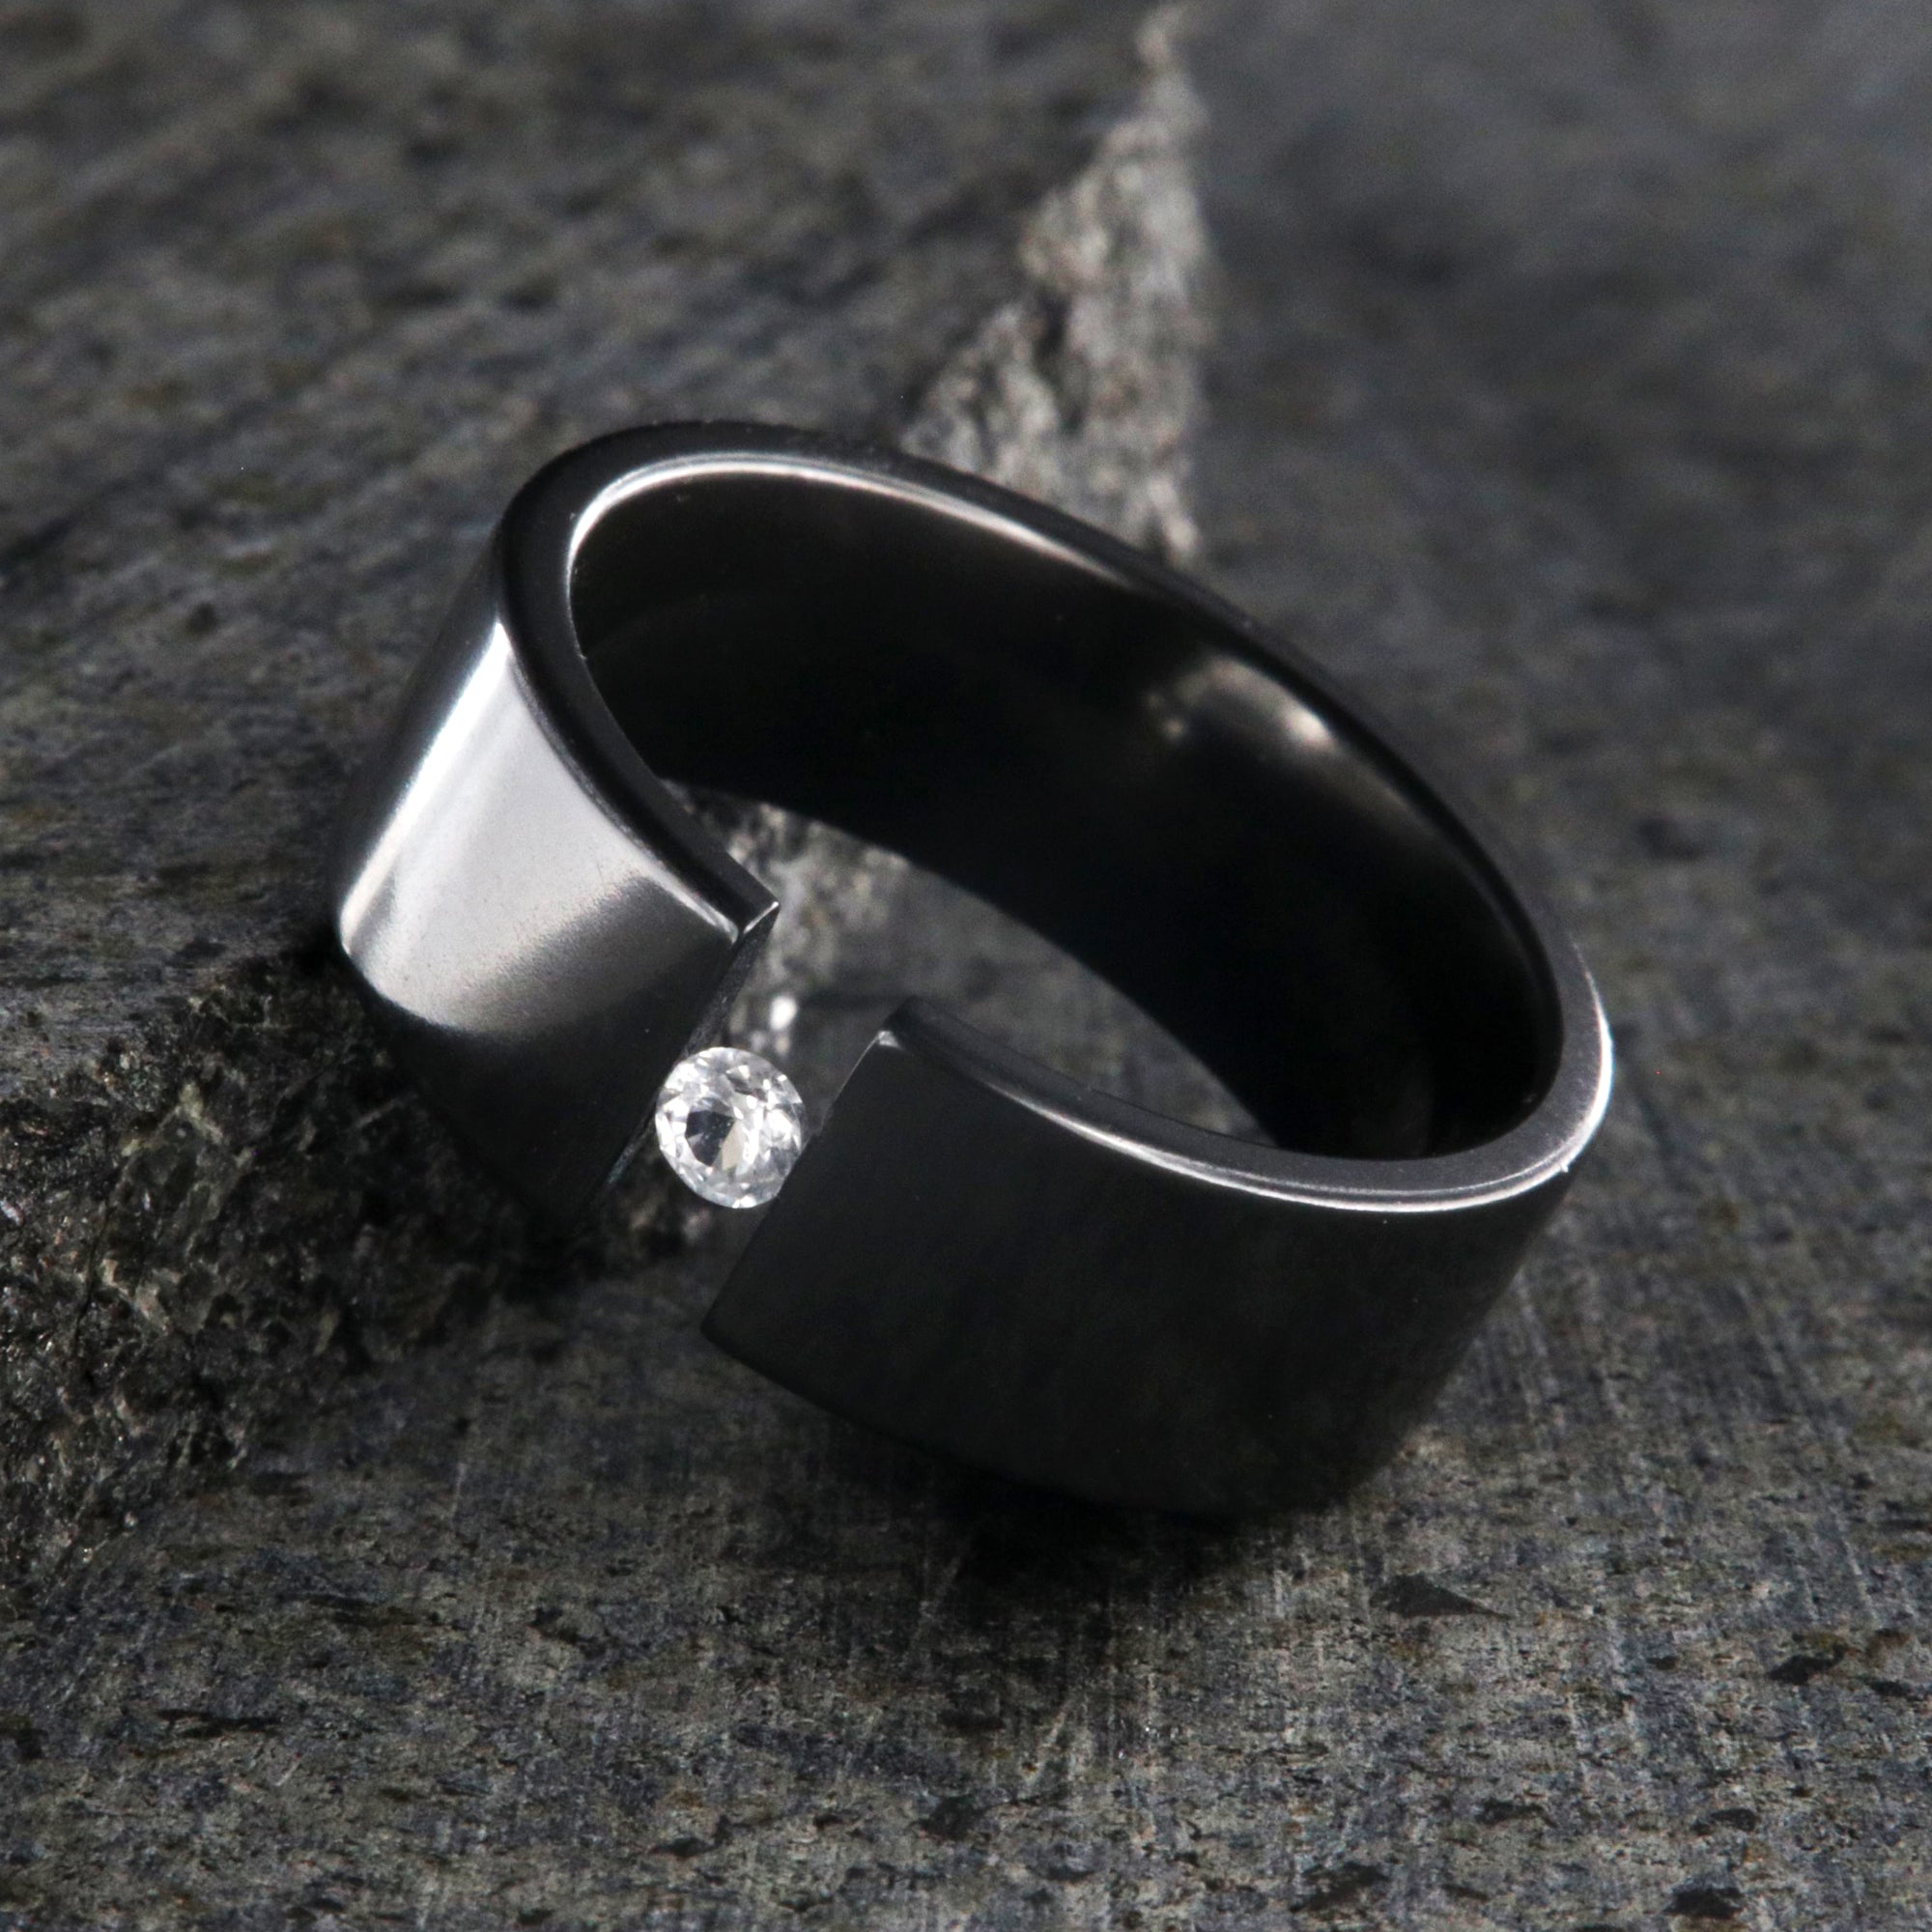 8mm wide black zirconium tension set ring with 3mm round gemstone